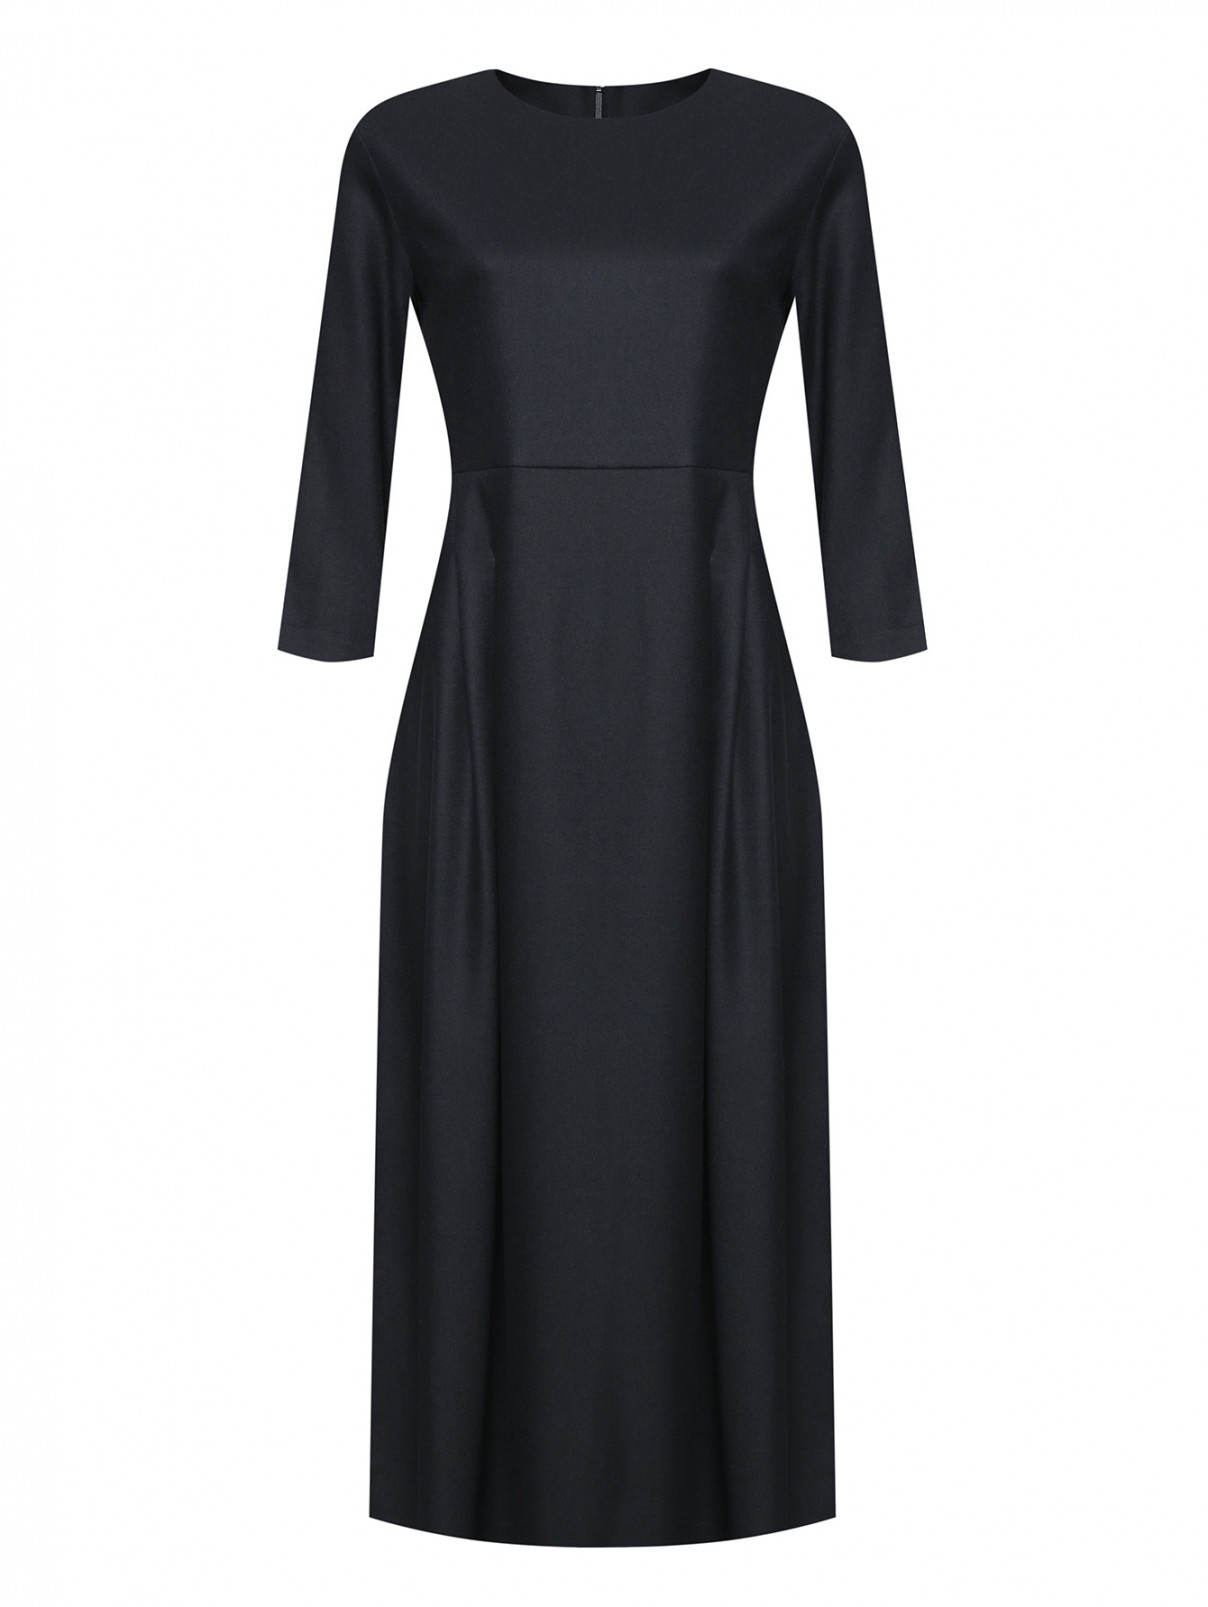 Платье из шерсти с завышенной талией Max Mara  –  Общий вид  – Цвет:  Черный